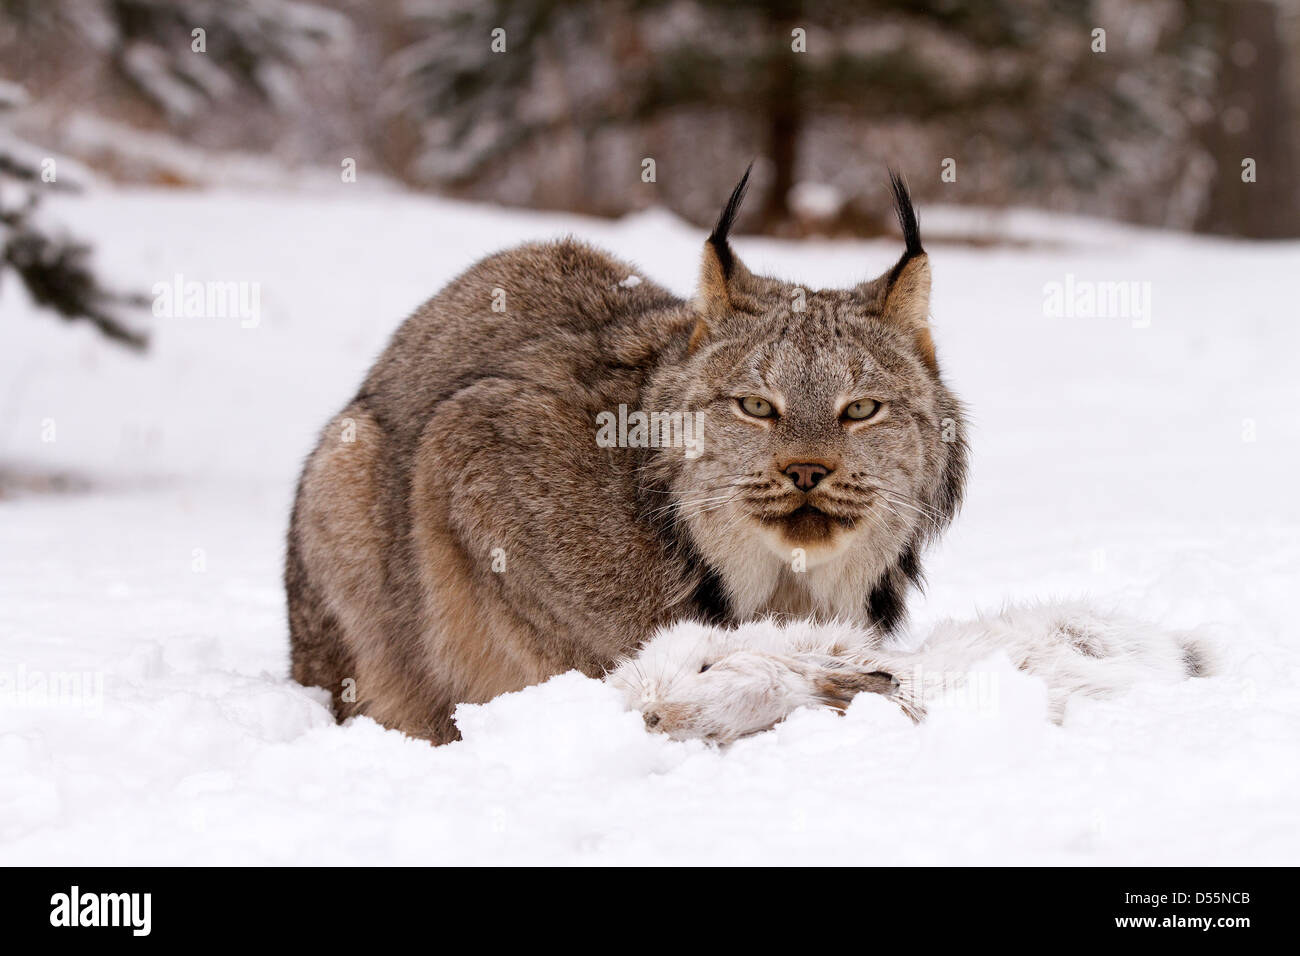 Le lynx est de retour dans la Nièvre - Glux-en-Glenne (58370)